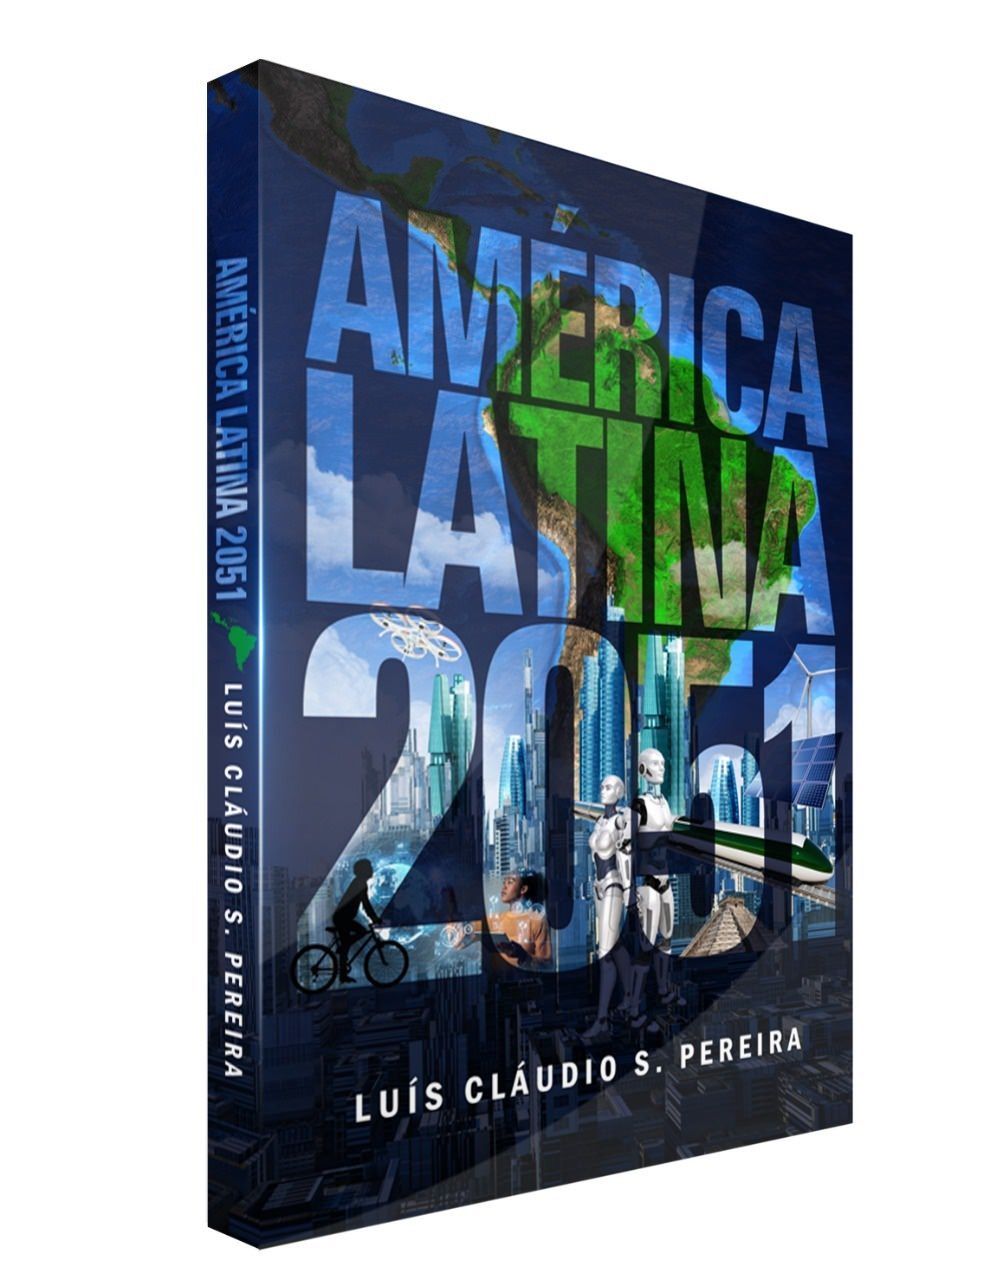 Livre "Amérique latine 2051" par Luís Cláudio S. Poire, couverture. Divulgation.